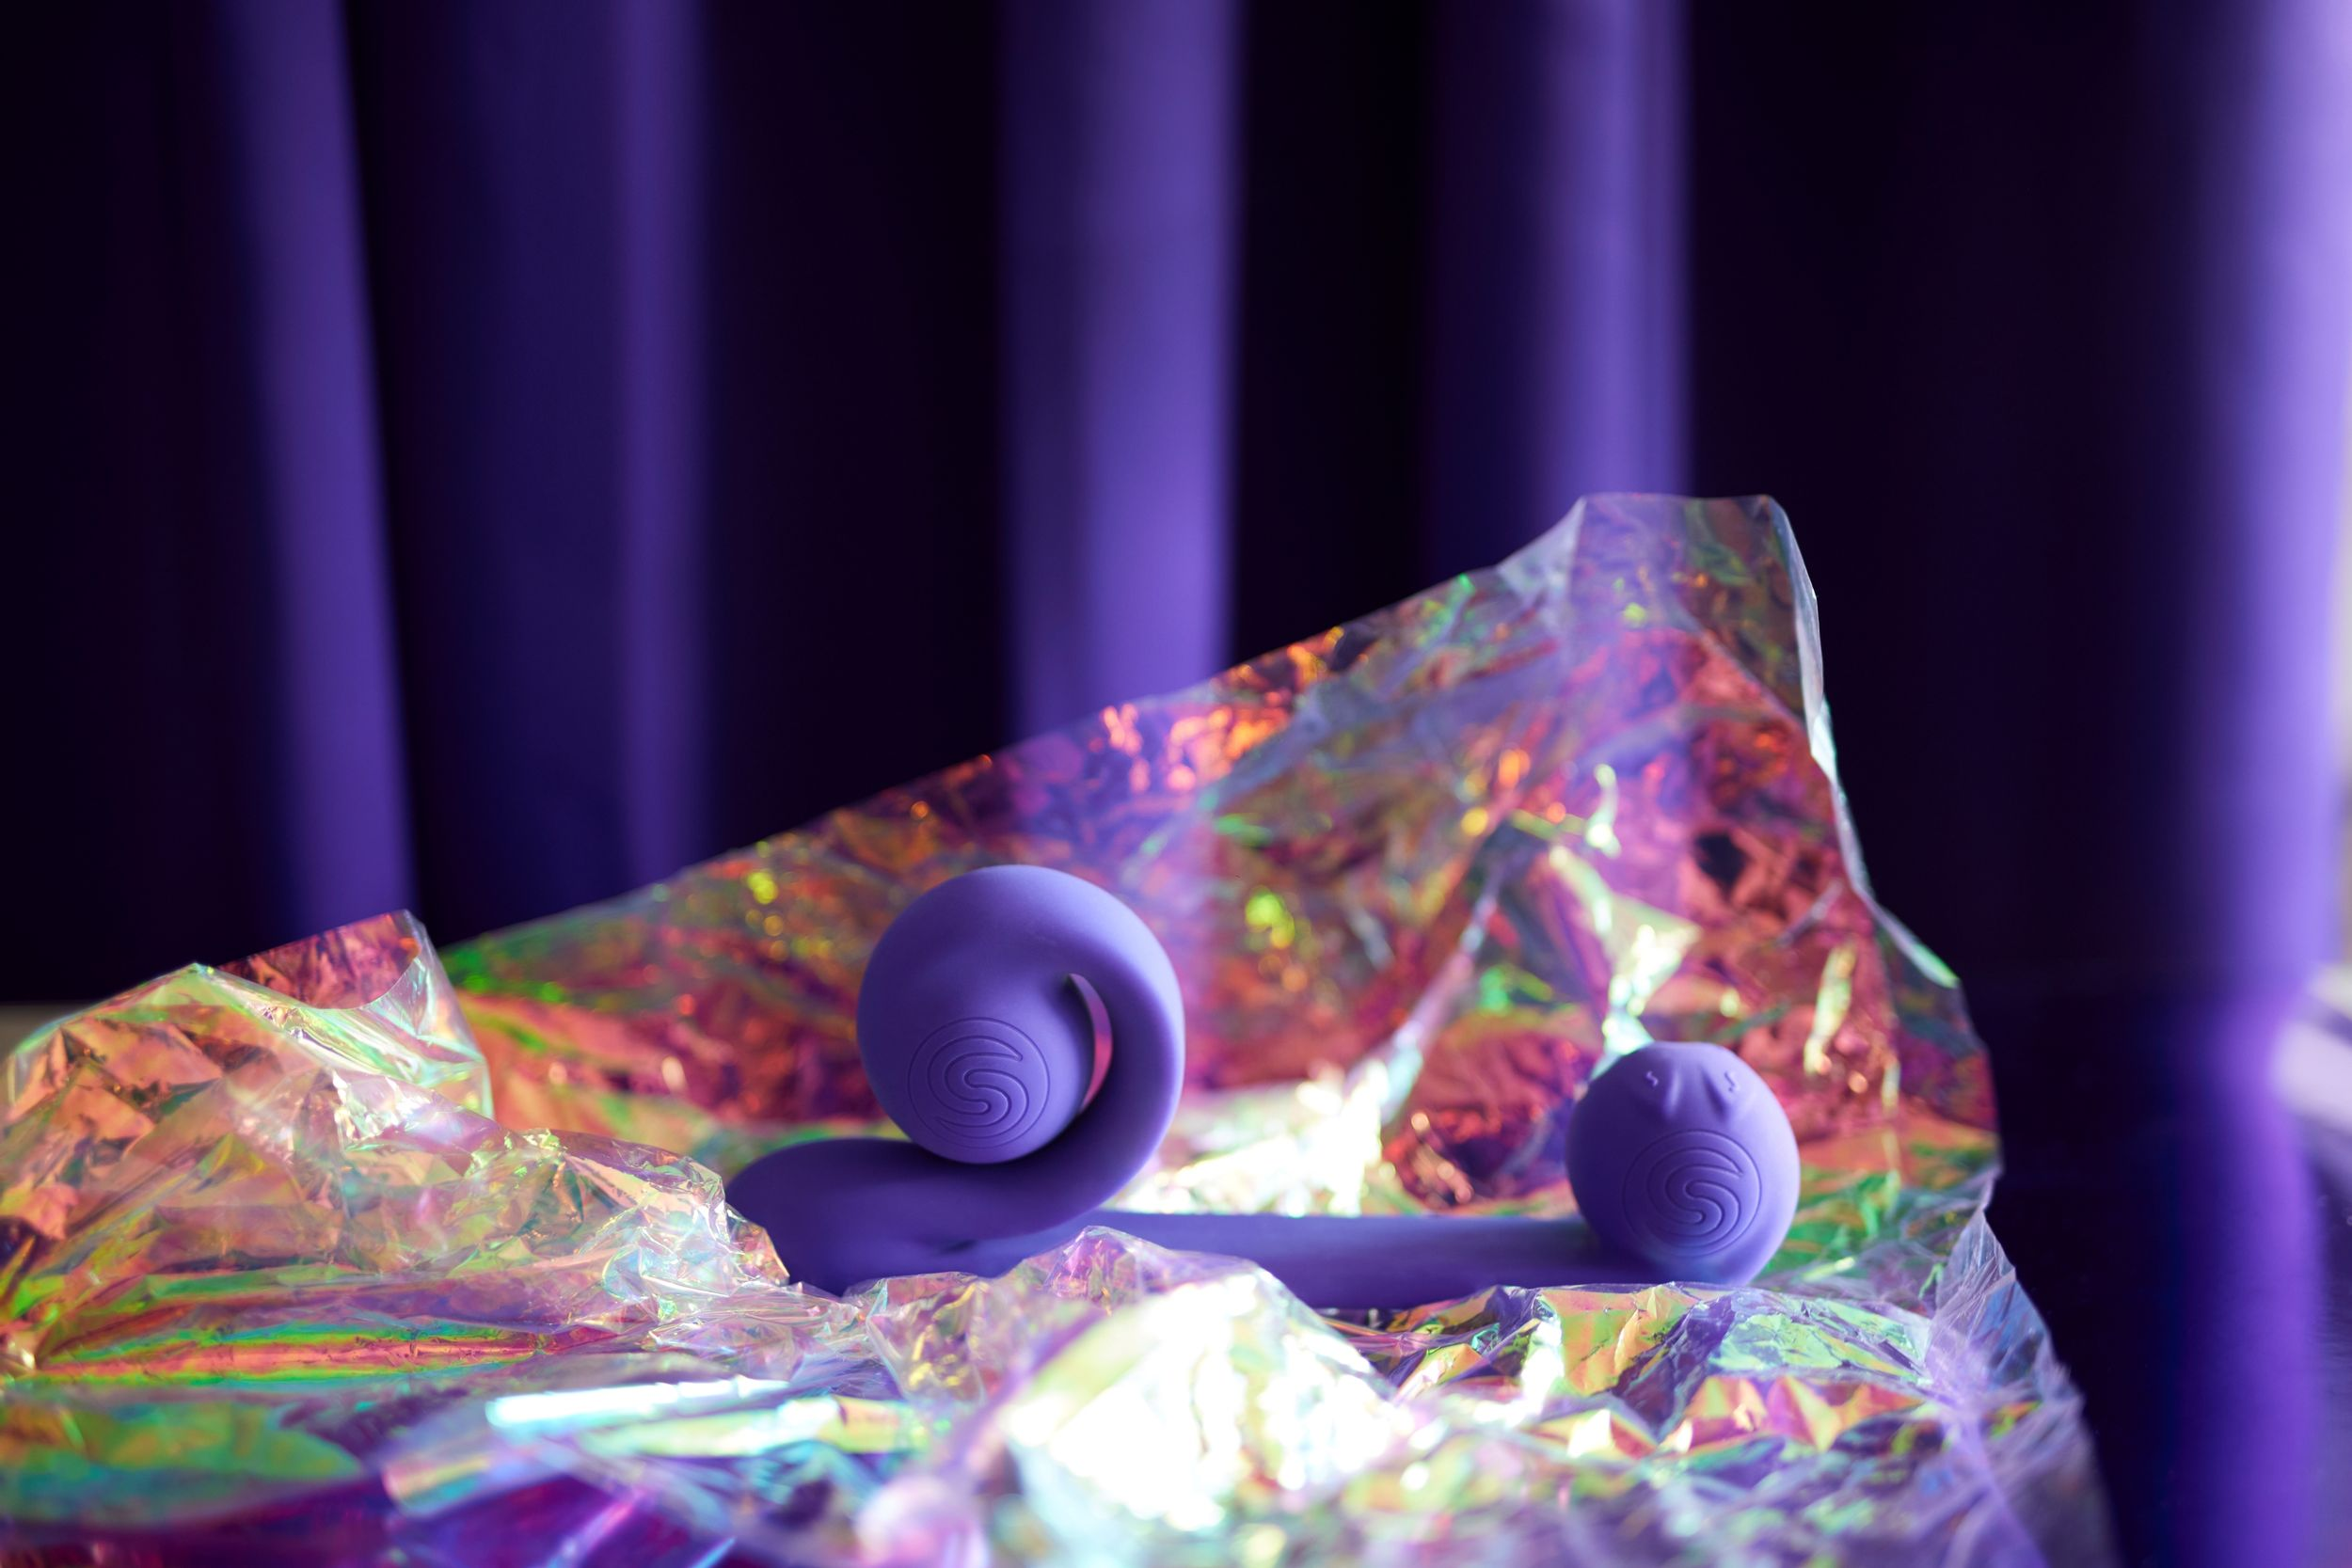 VIBE Purple SNAIL g-punkt-vibratoren